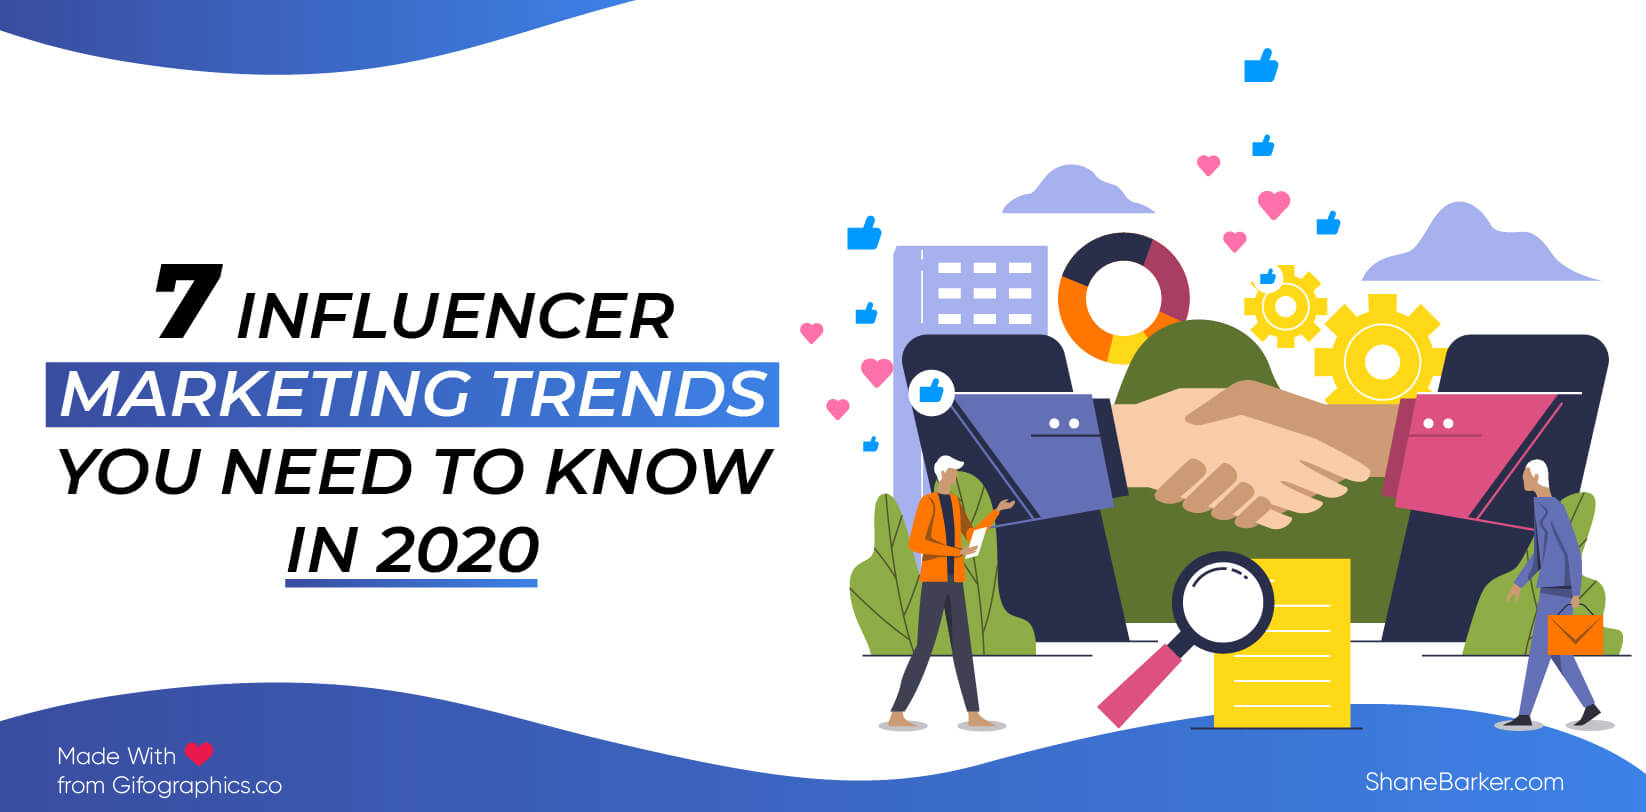 7 tendințe de marketing pentru influenți pe care trebuie să le cunoașteți în 2020 (actualizat în octombrie)